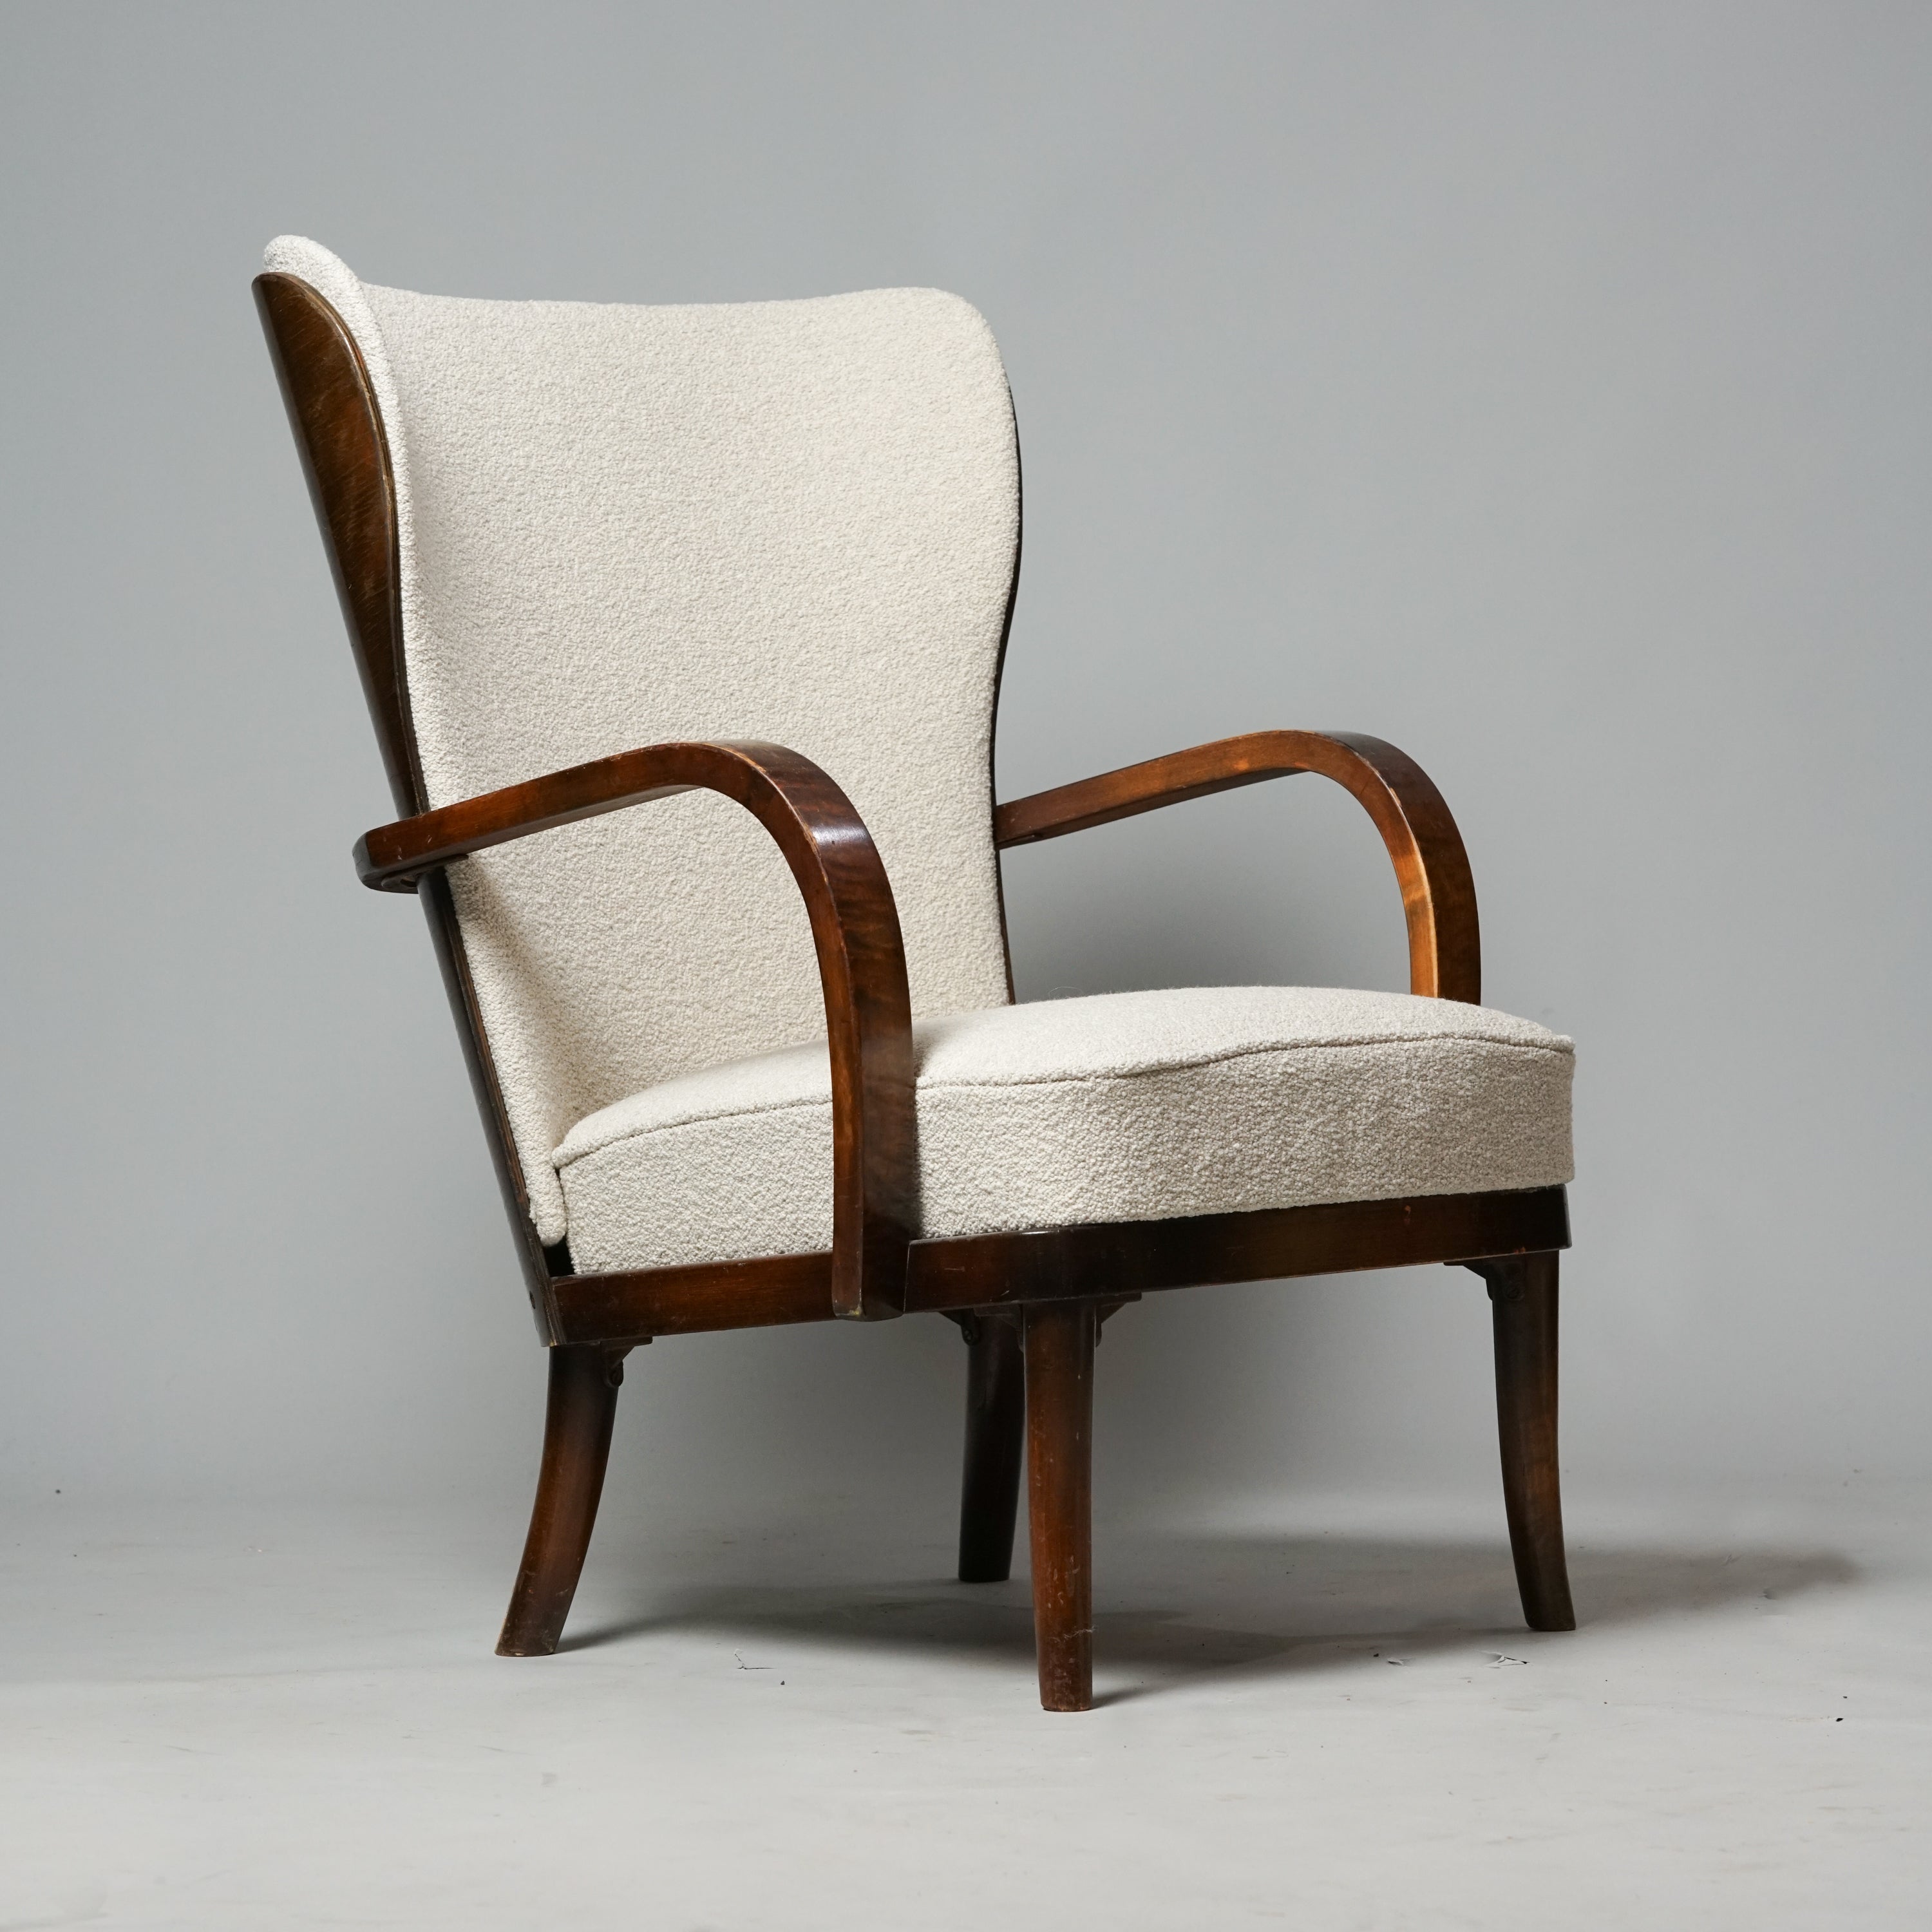 Wingback-tuoli tehty tummasta puusta. Istuinosa on verhoiltu vaalealla kankaalla.